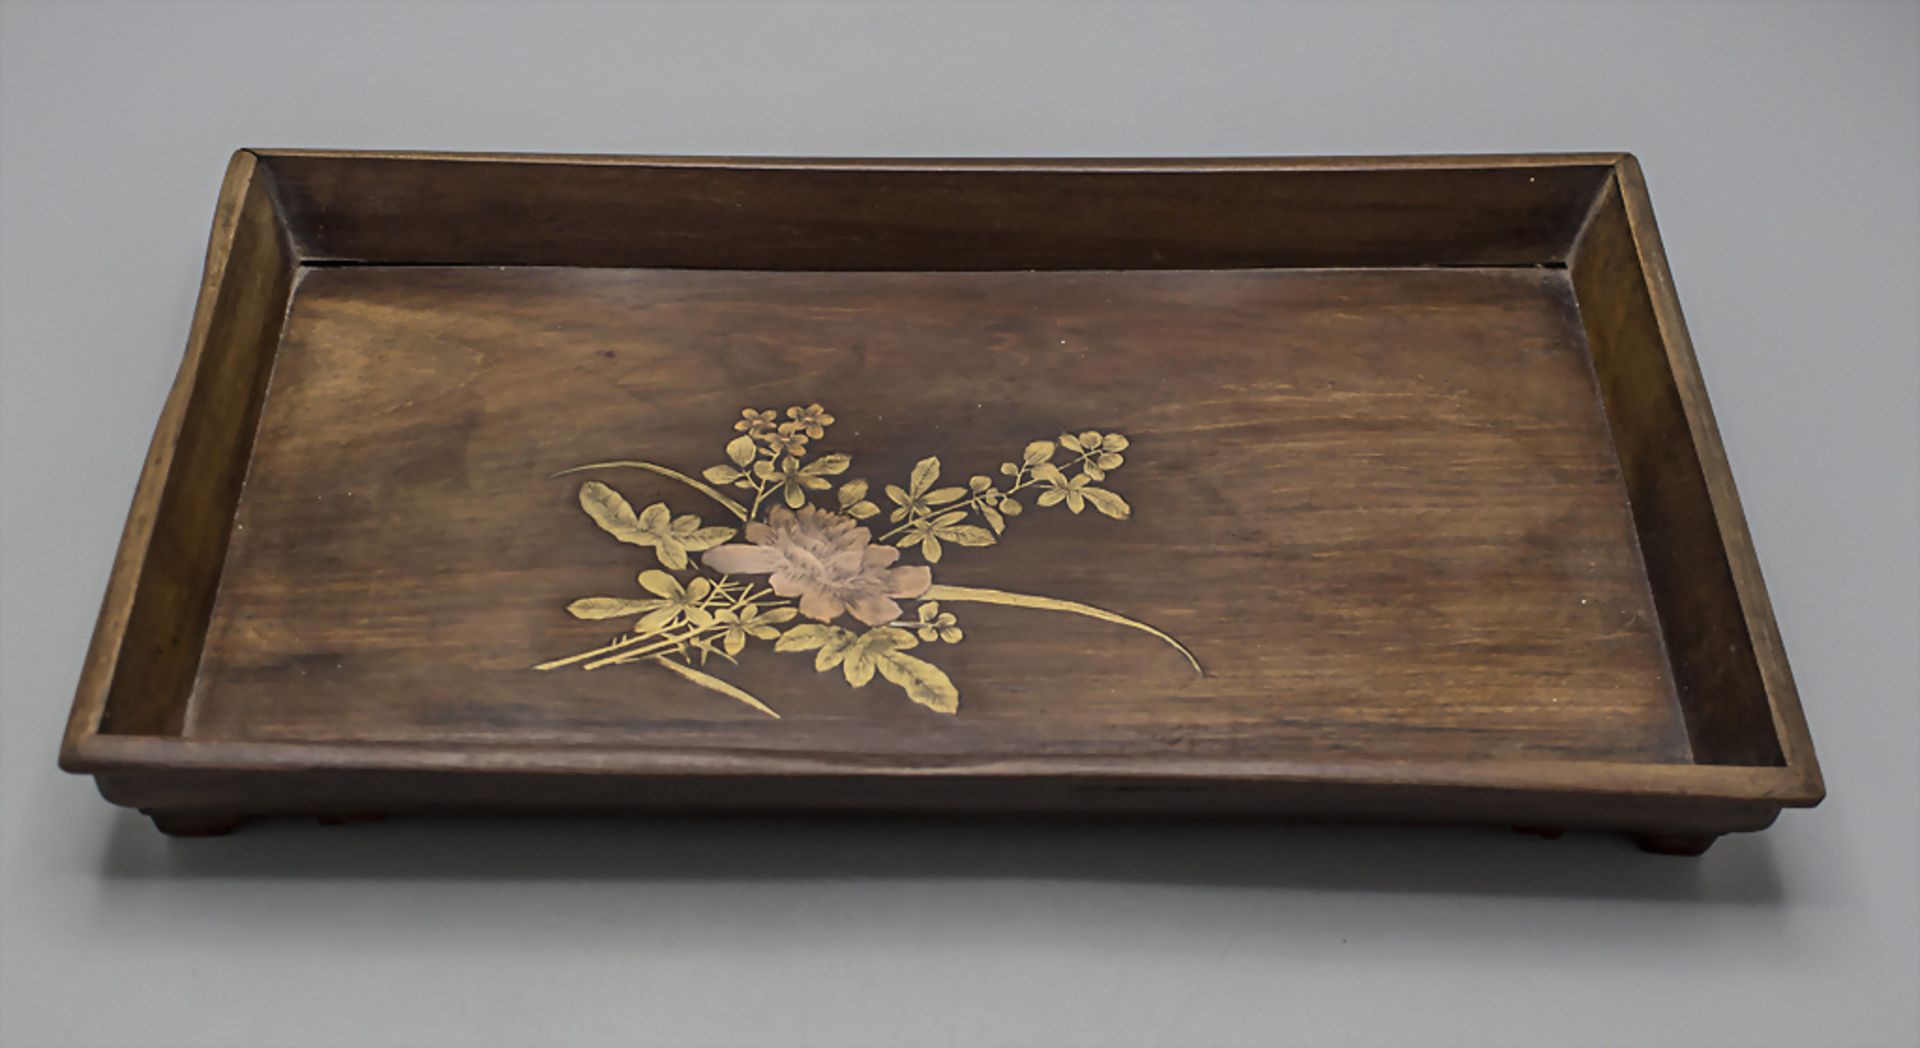 Holztablett auf vier Füßen mit Floraldekor / A footed wooden tray with floral inlays, ... - Bild 5 aus 6